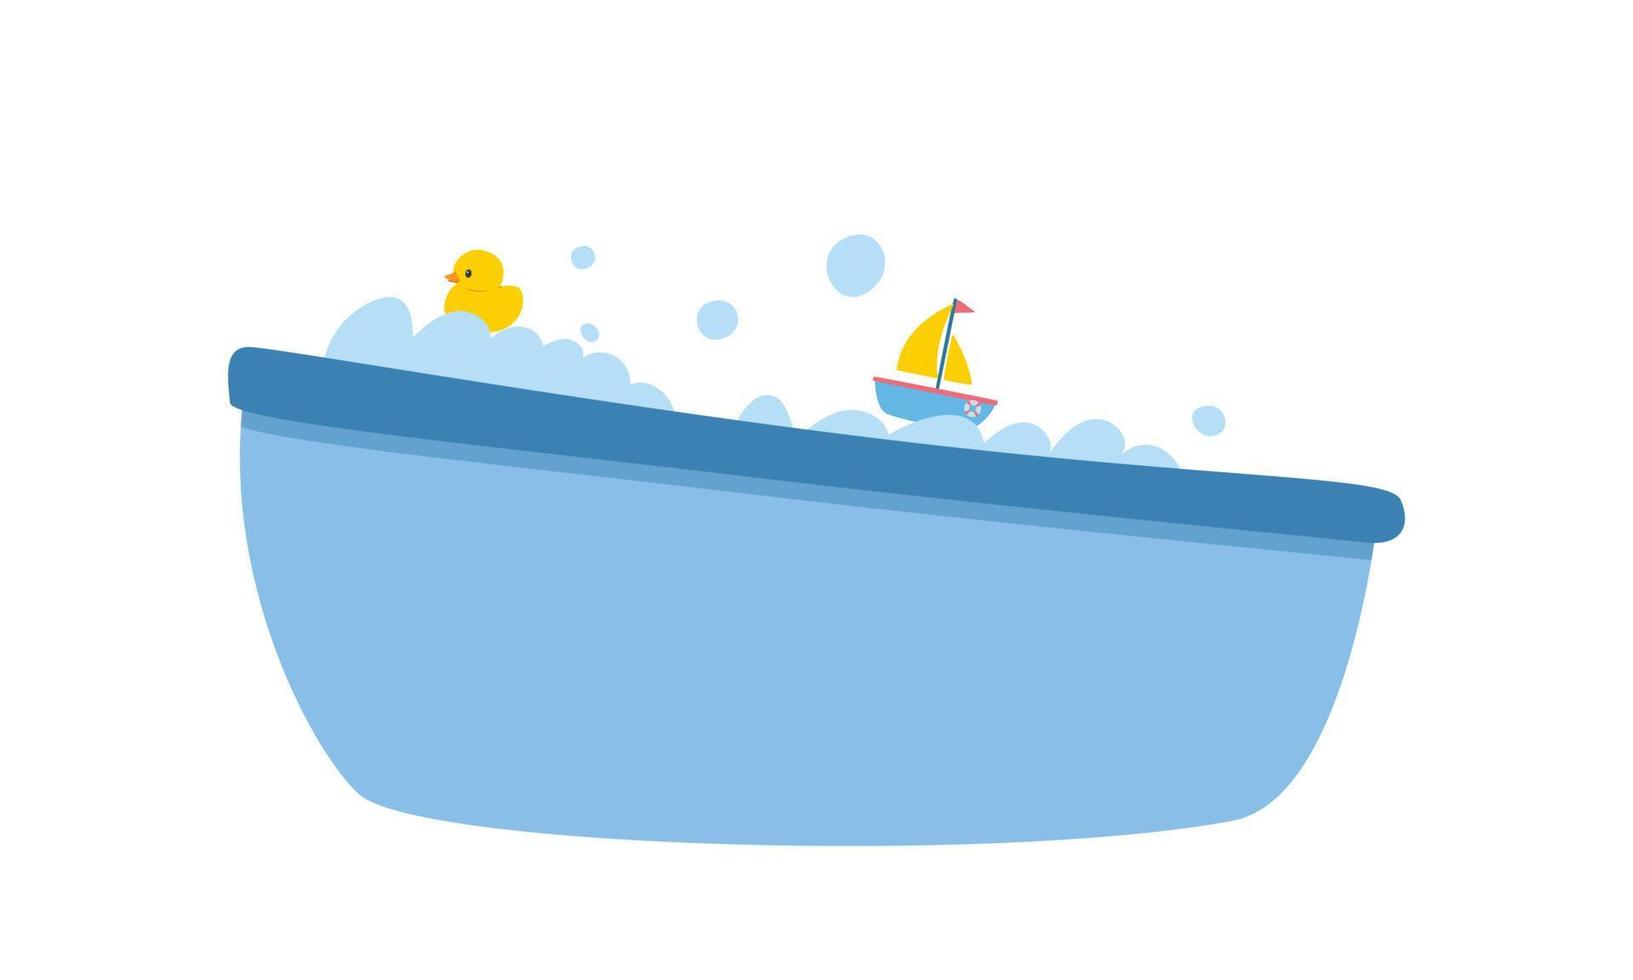 clipart de banheira de bebê. banheira de bebê azul bonito simples com bolhas de espuma e pato de borracha amarelo, ilustração vetorial plana de barco de brinquedo. estilo de desenho animado de banheira de plástico. banheira para bebê, crianças pequenas, crianças vetor